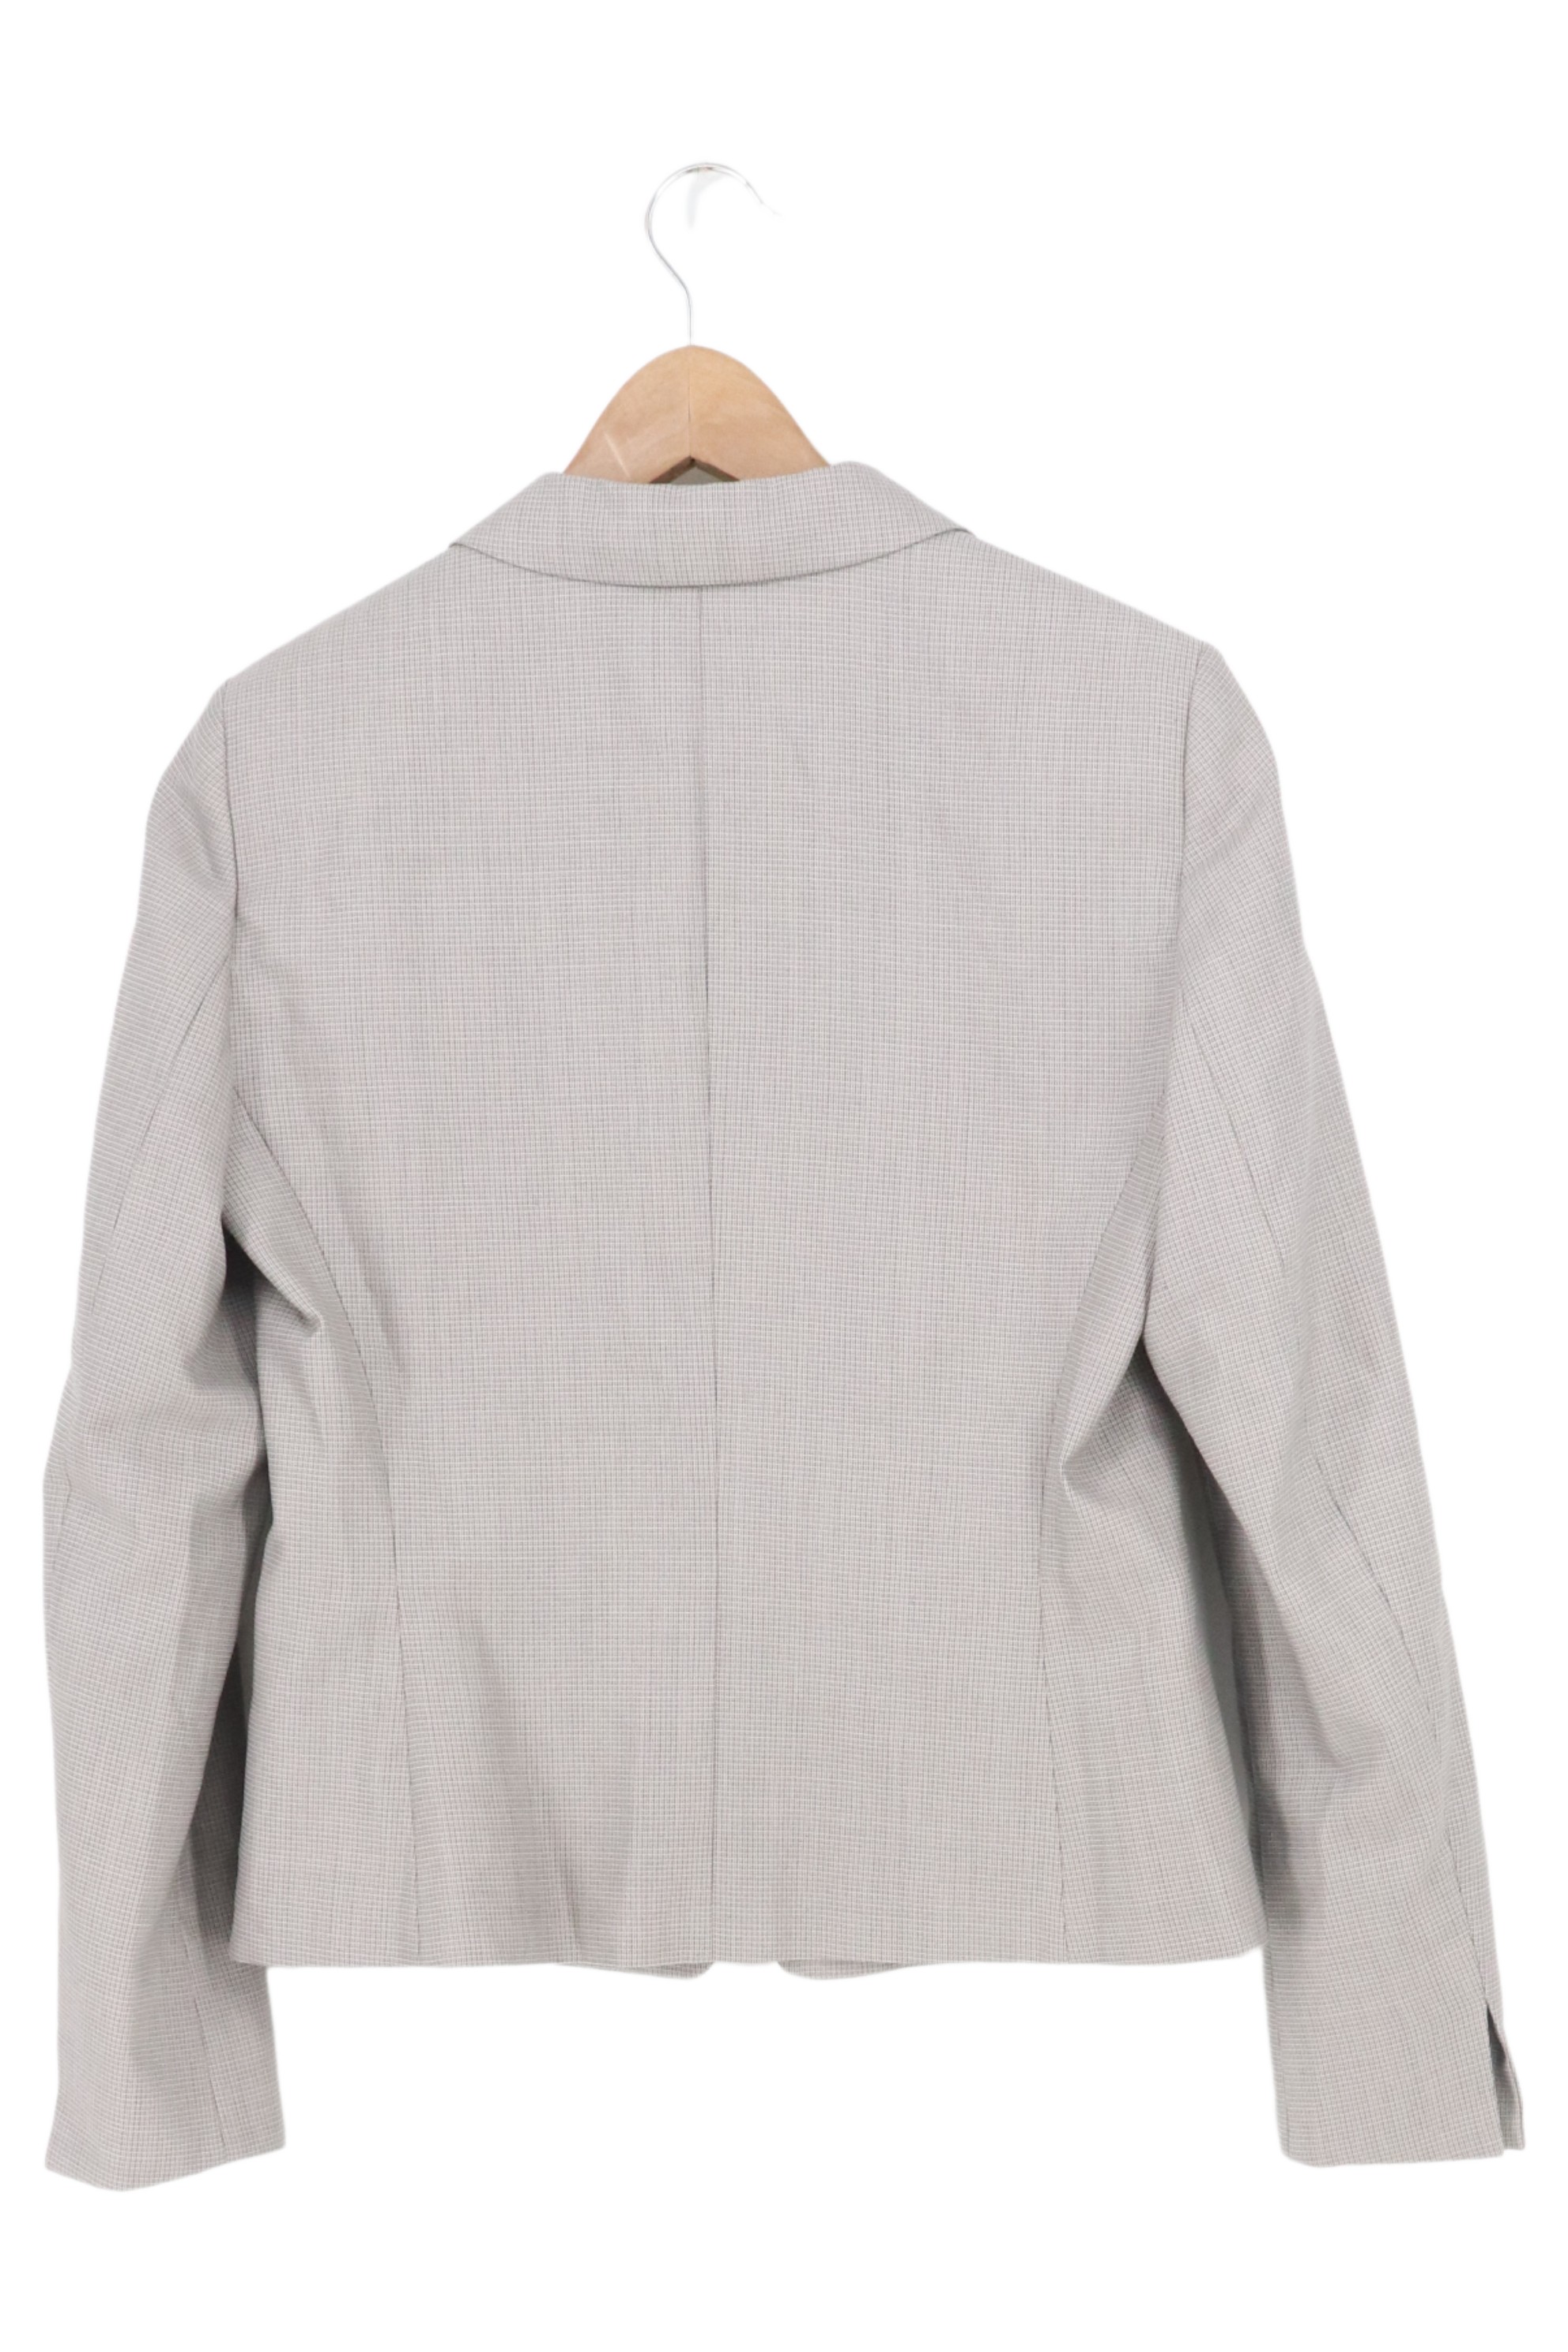 HUGO HUGO BOSS women's gray trouser suit size 38 | eBay